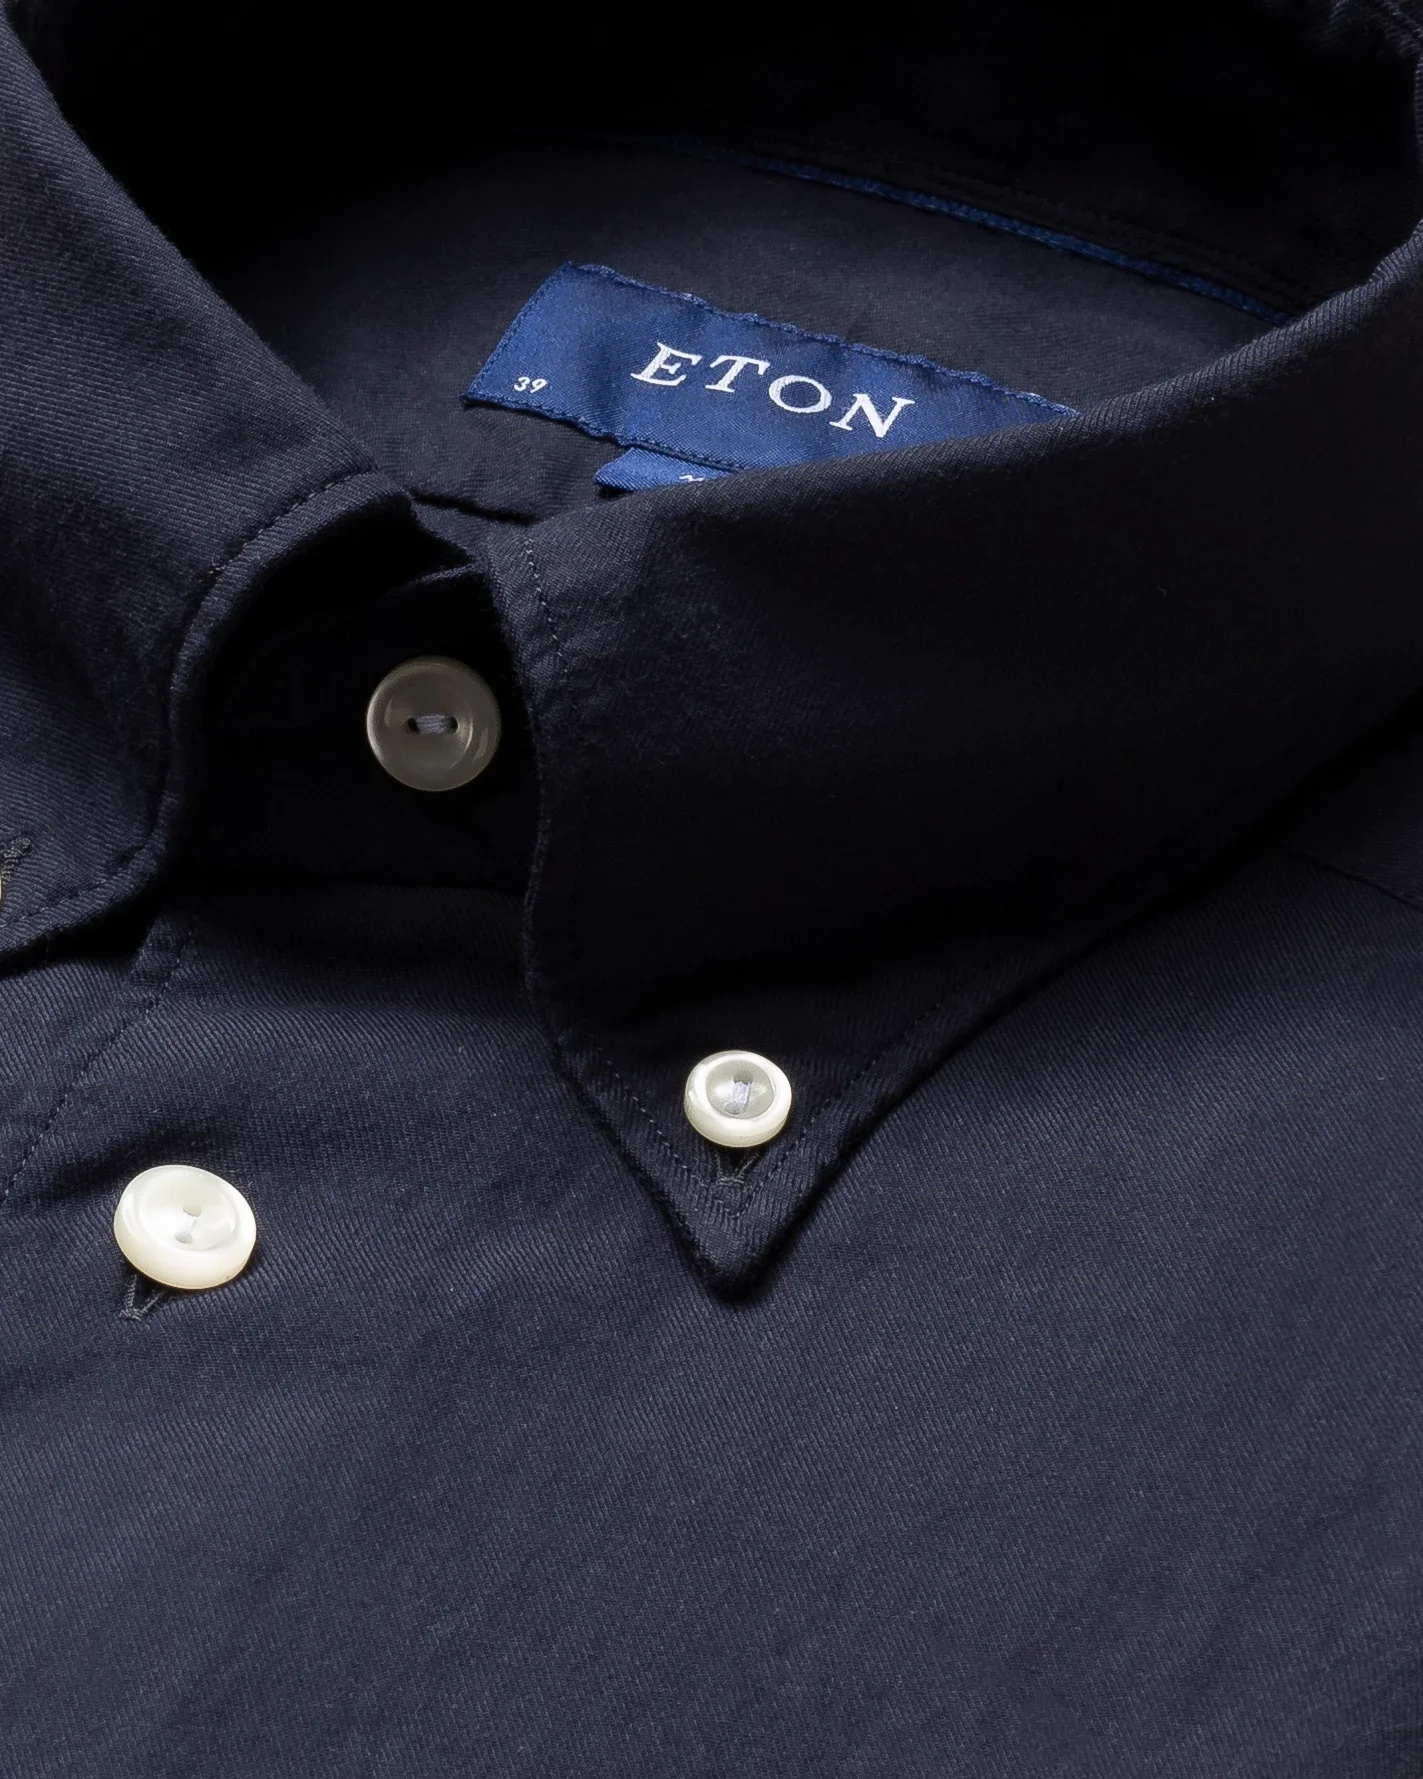 Eton - navy lightweight flannel shirt